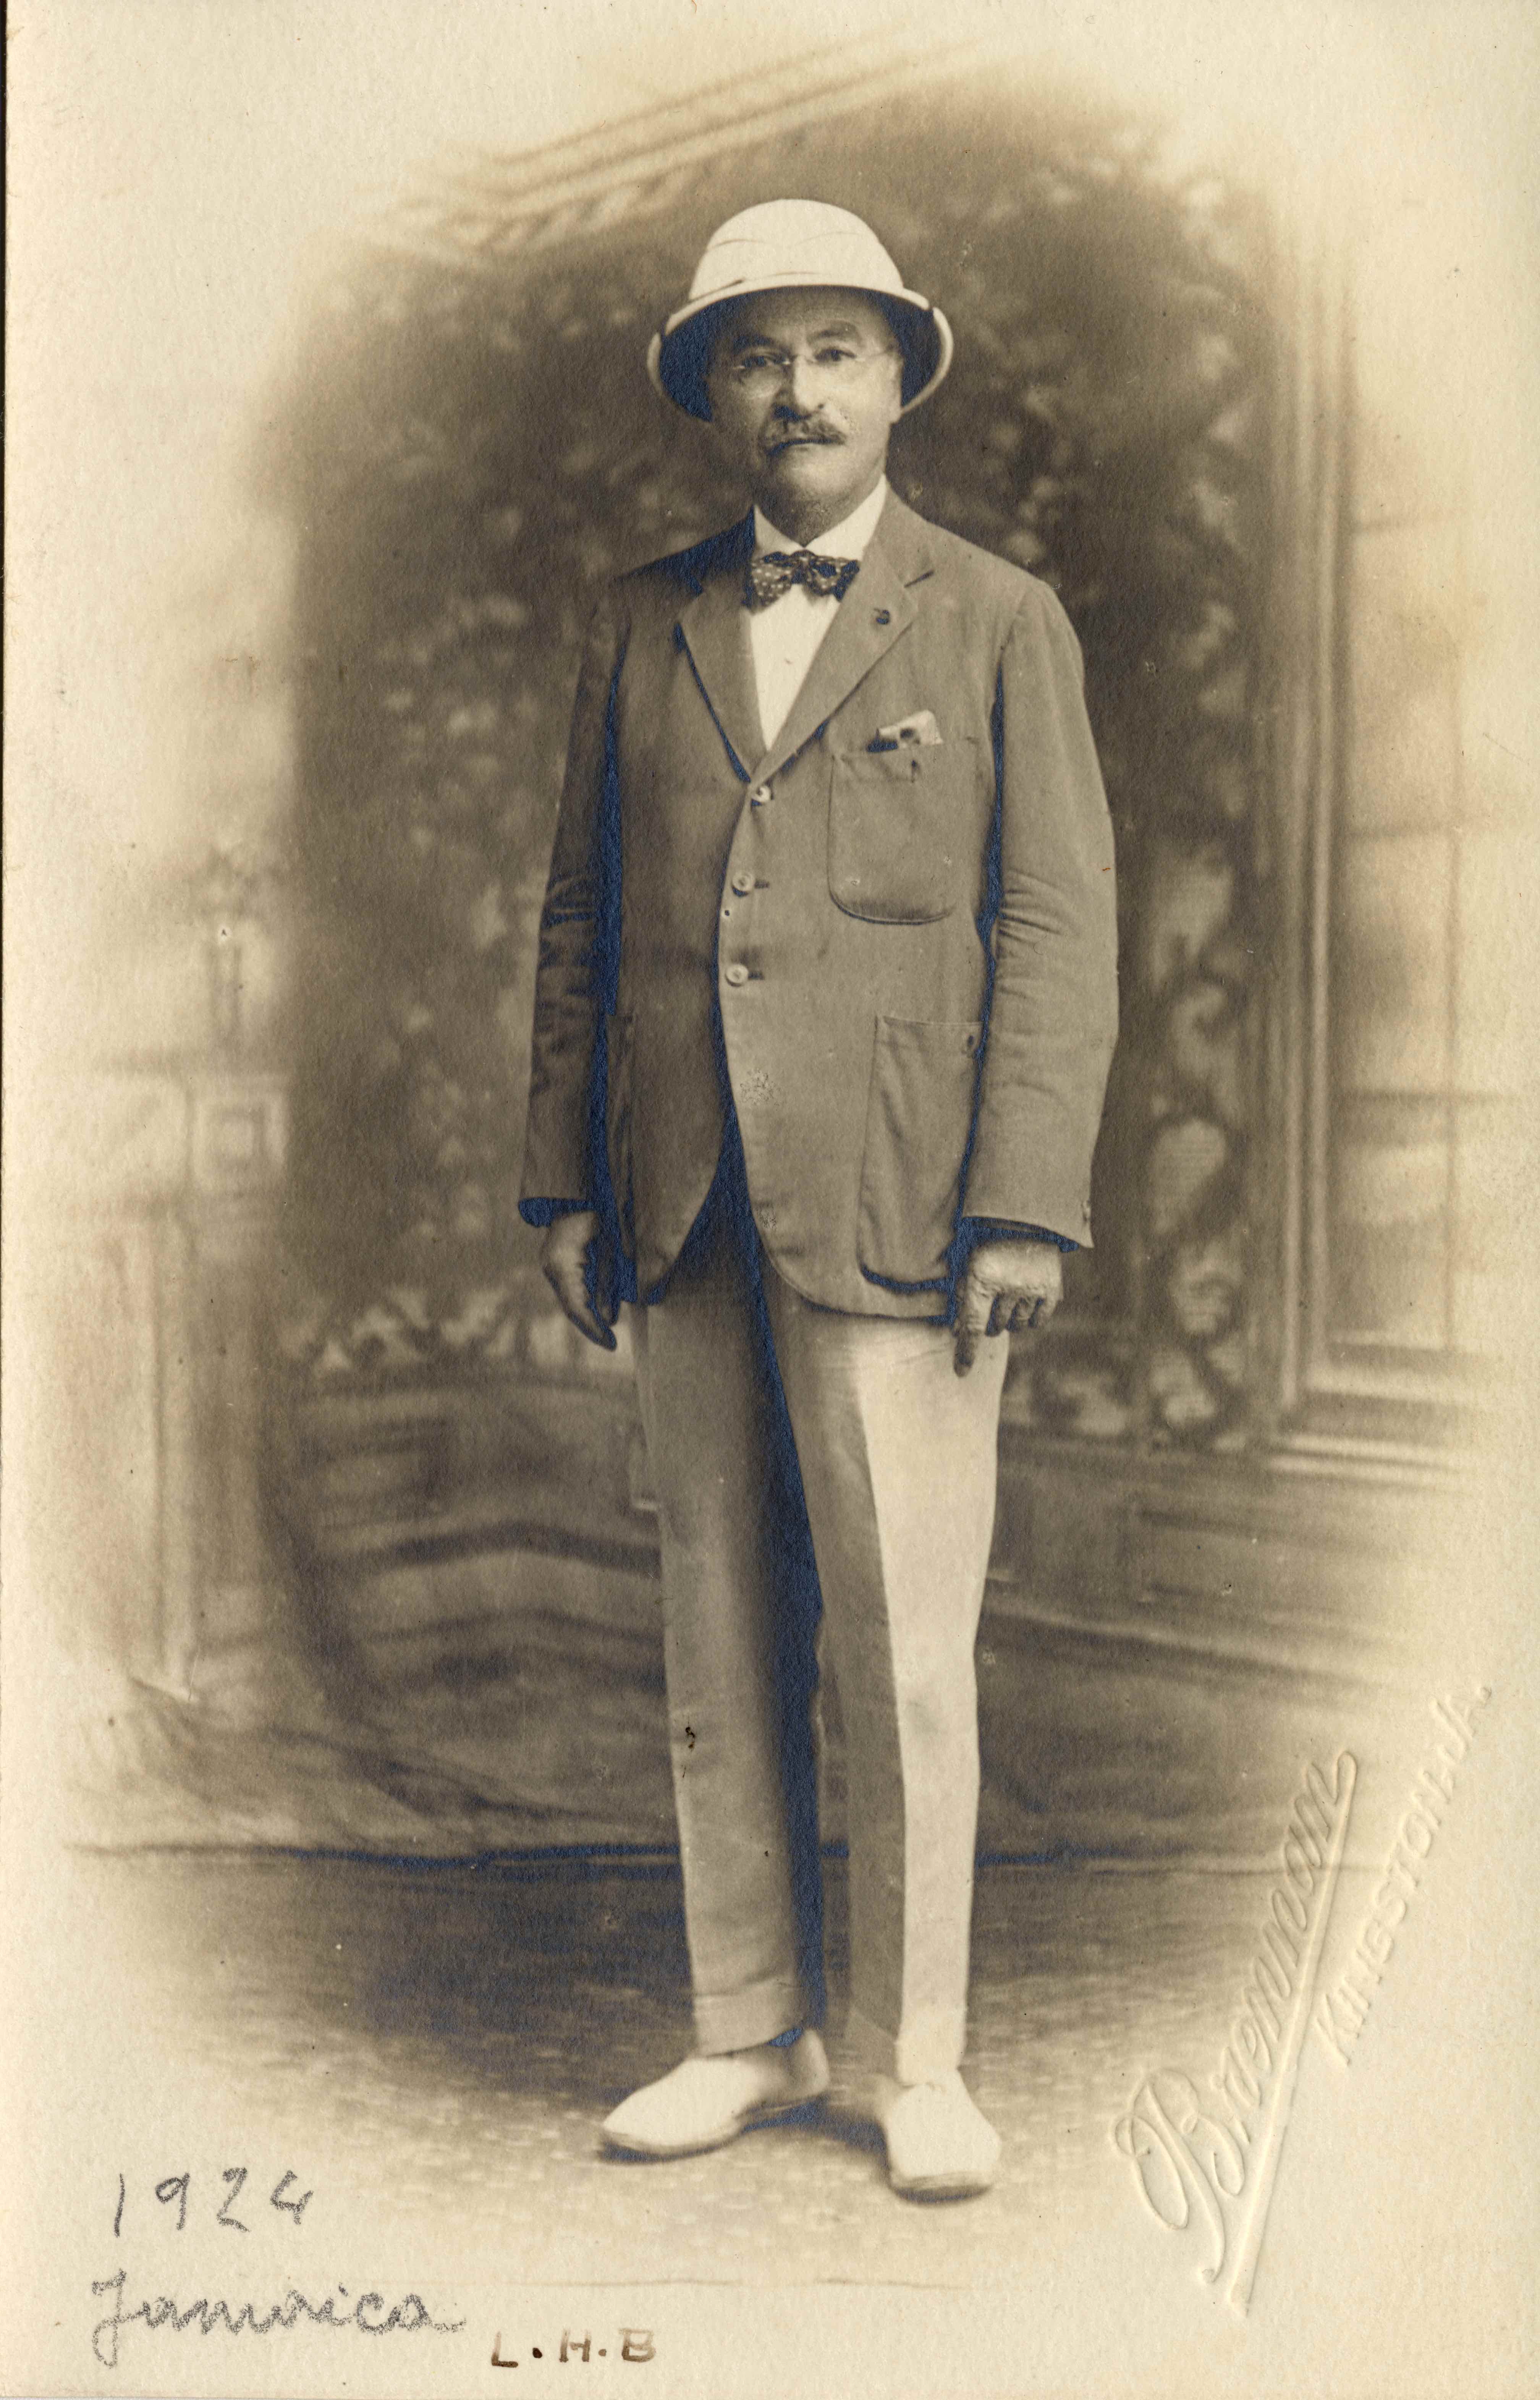 L.H. Baekeland, Kingston, Jamaica, 1924